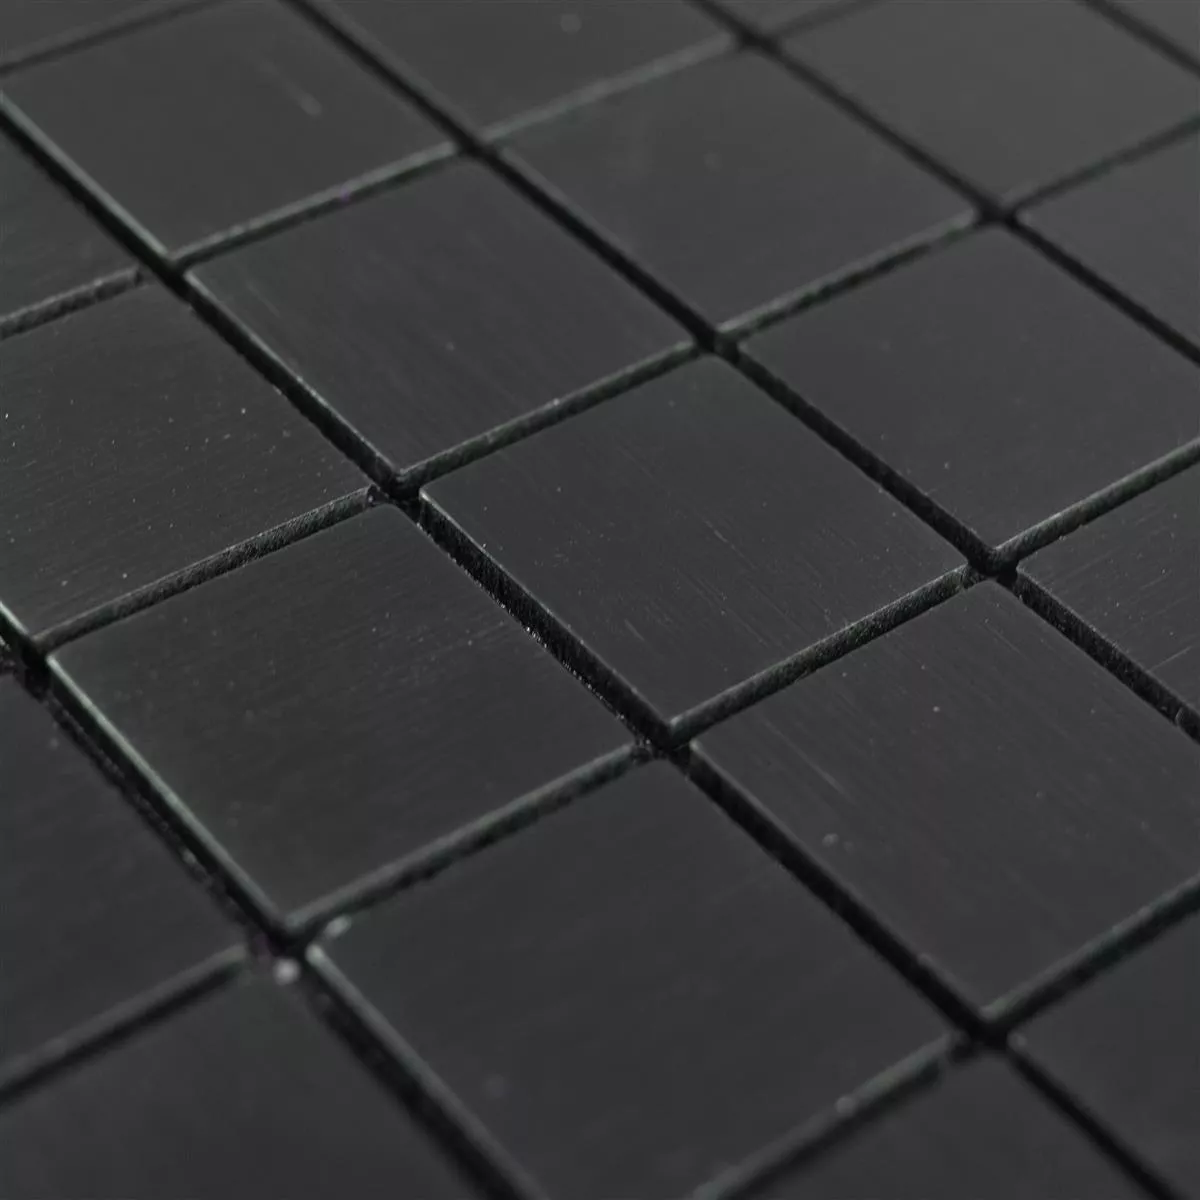 Πρότυπο από Mέταλλο Ψηφιδωτά Πλακάκια Wygon Aυτοκόλλητες Μαύρος 25mm